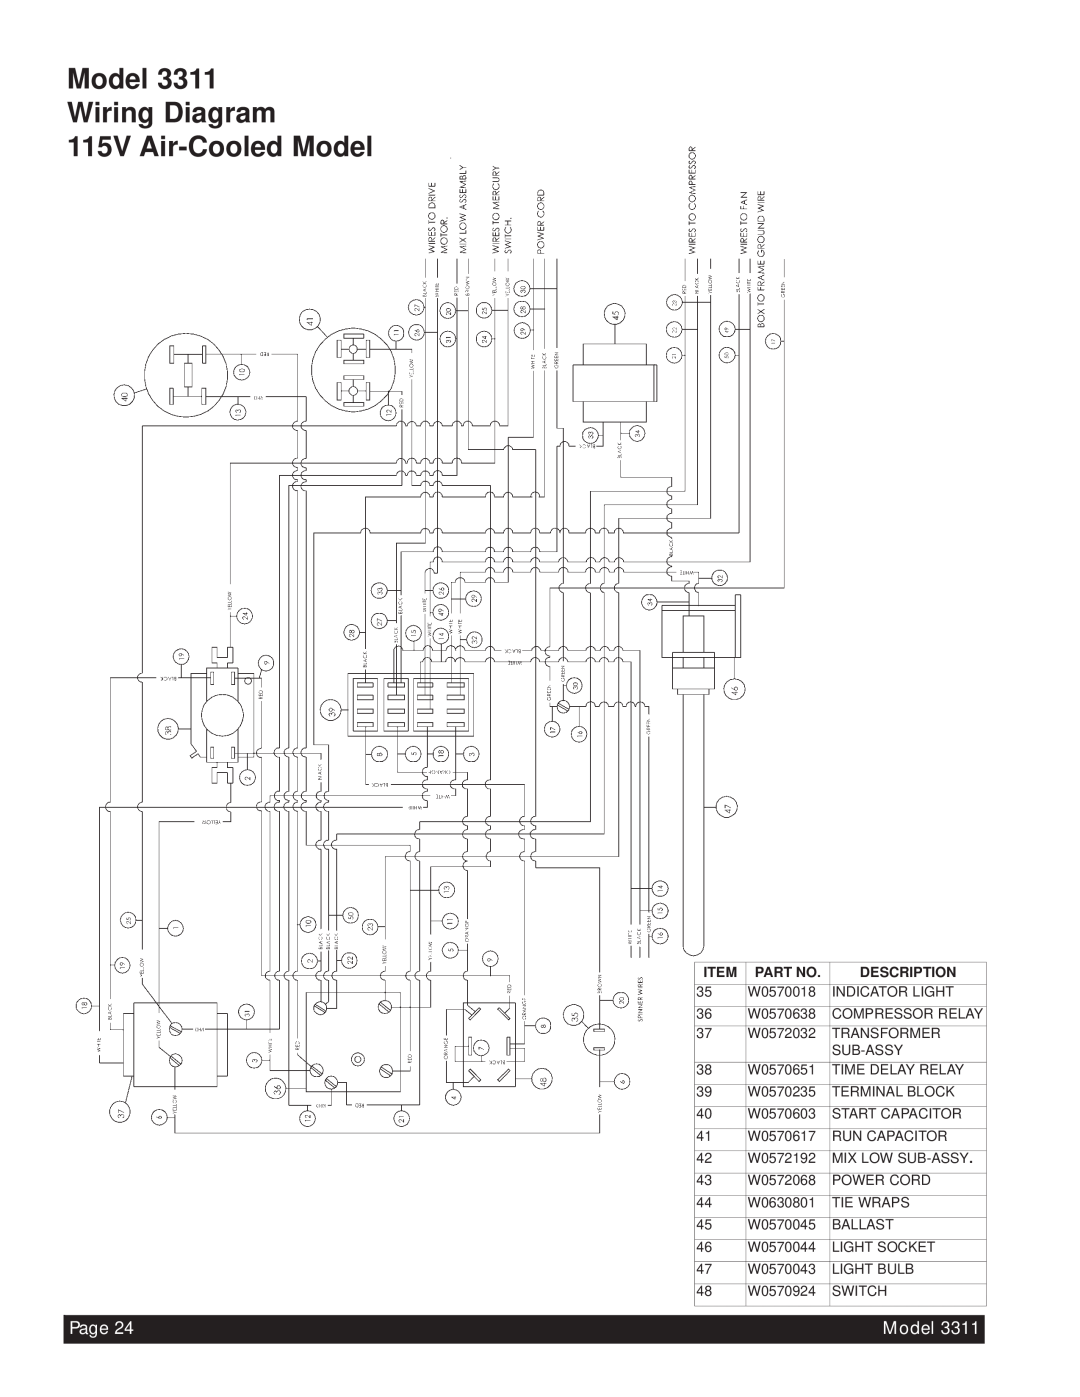 Beverage-Air 3311 manual Model Wiring Diagram 115V Air-CooledModel, Page, Item, Description 